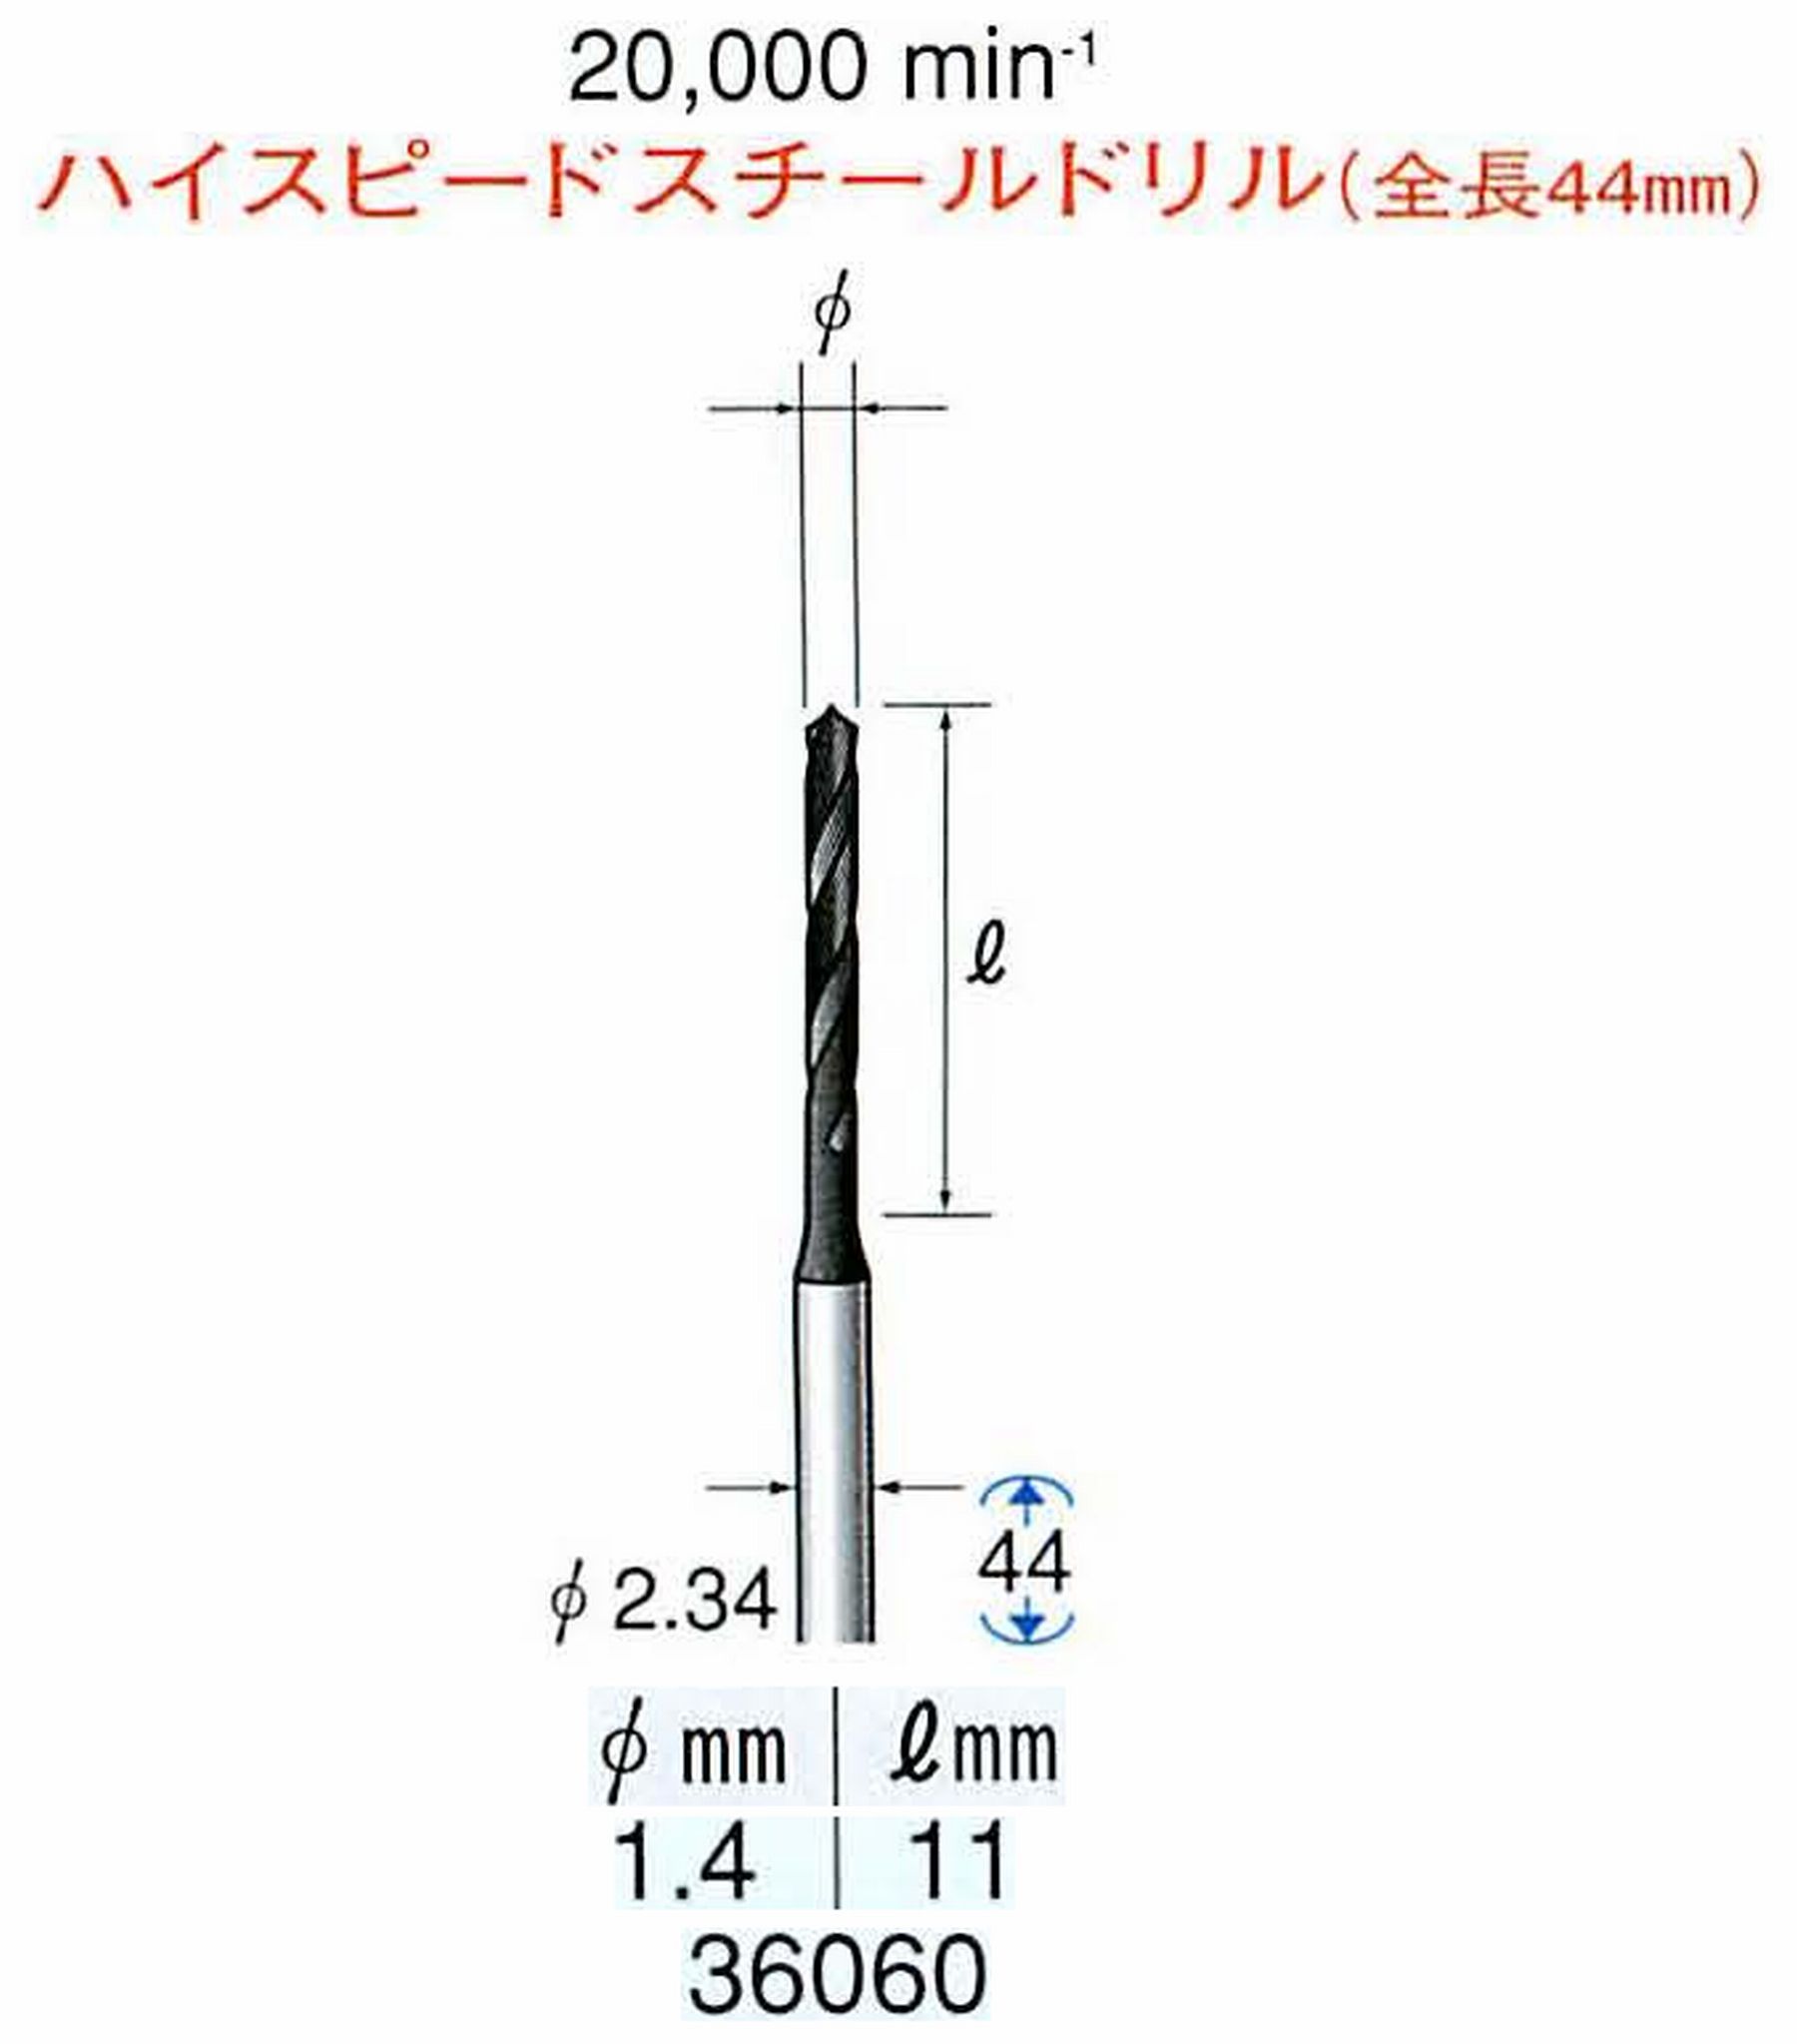 ナカニシ/NAKANISHI ツイストドリル ハイスピードスチール(H.S.S)ドリル(全長44mm) 軸径(シャンク) φ2.34mm 36060